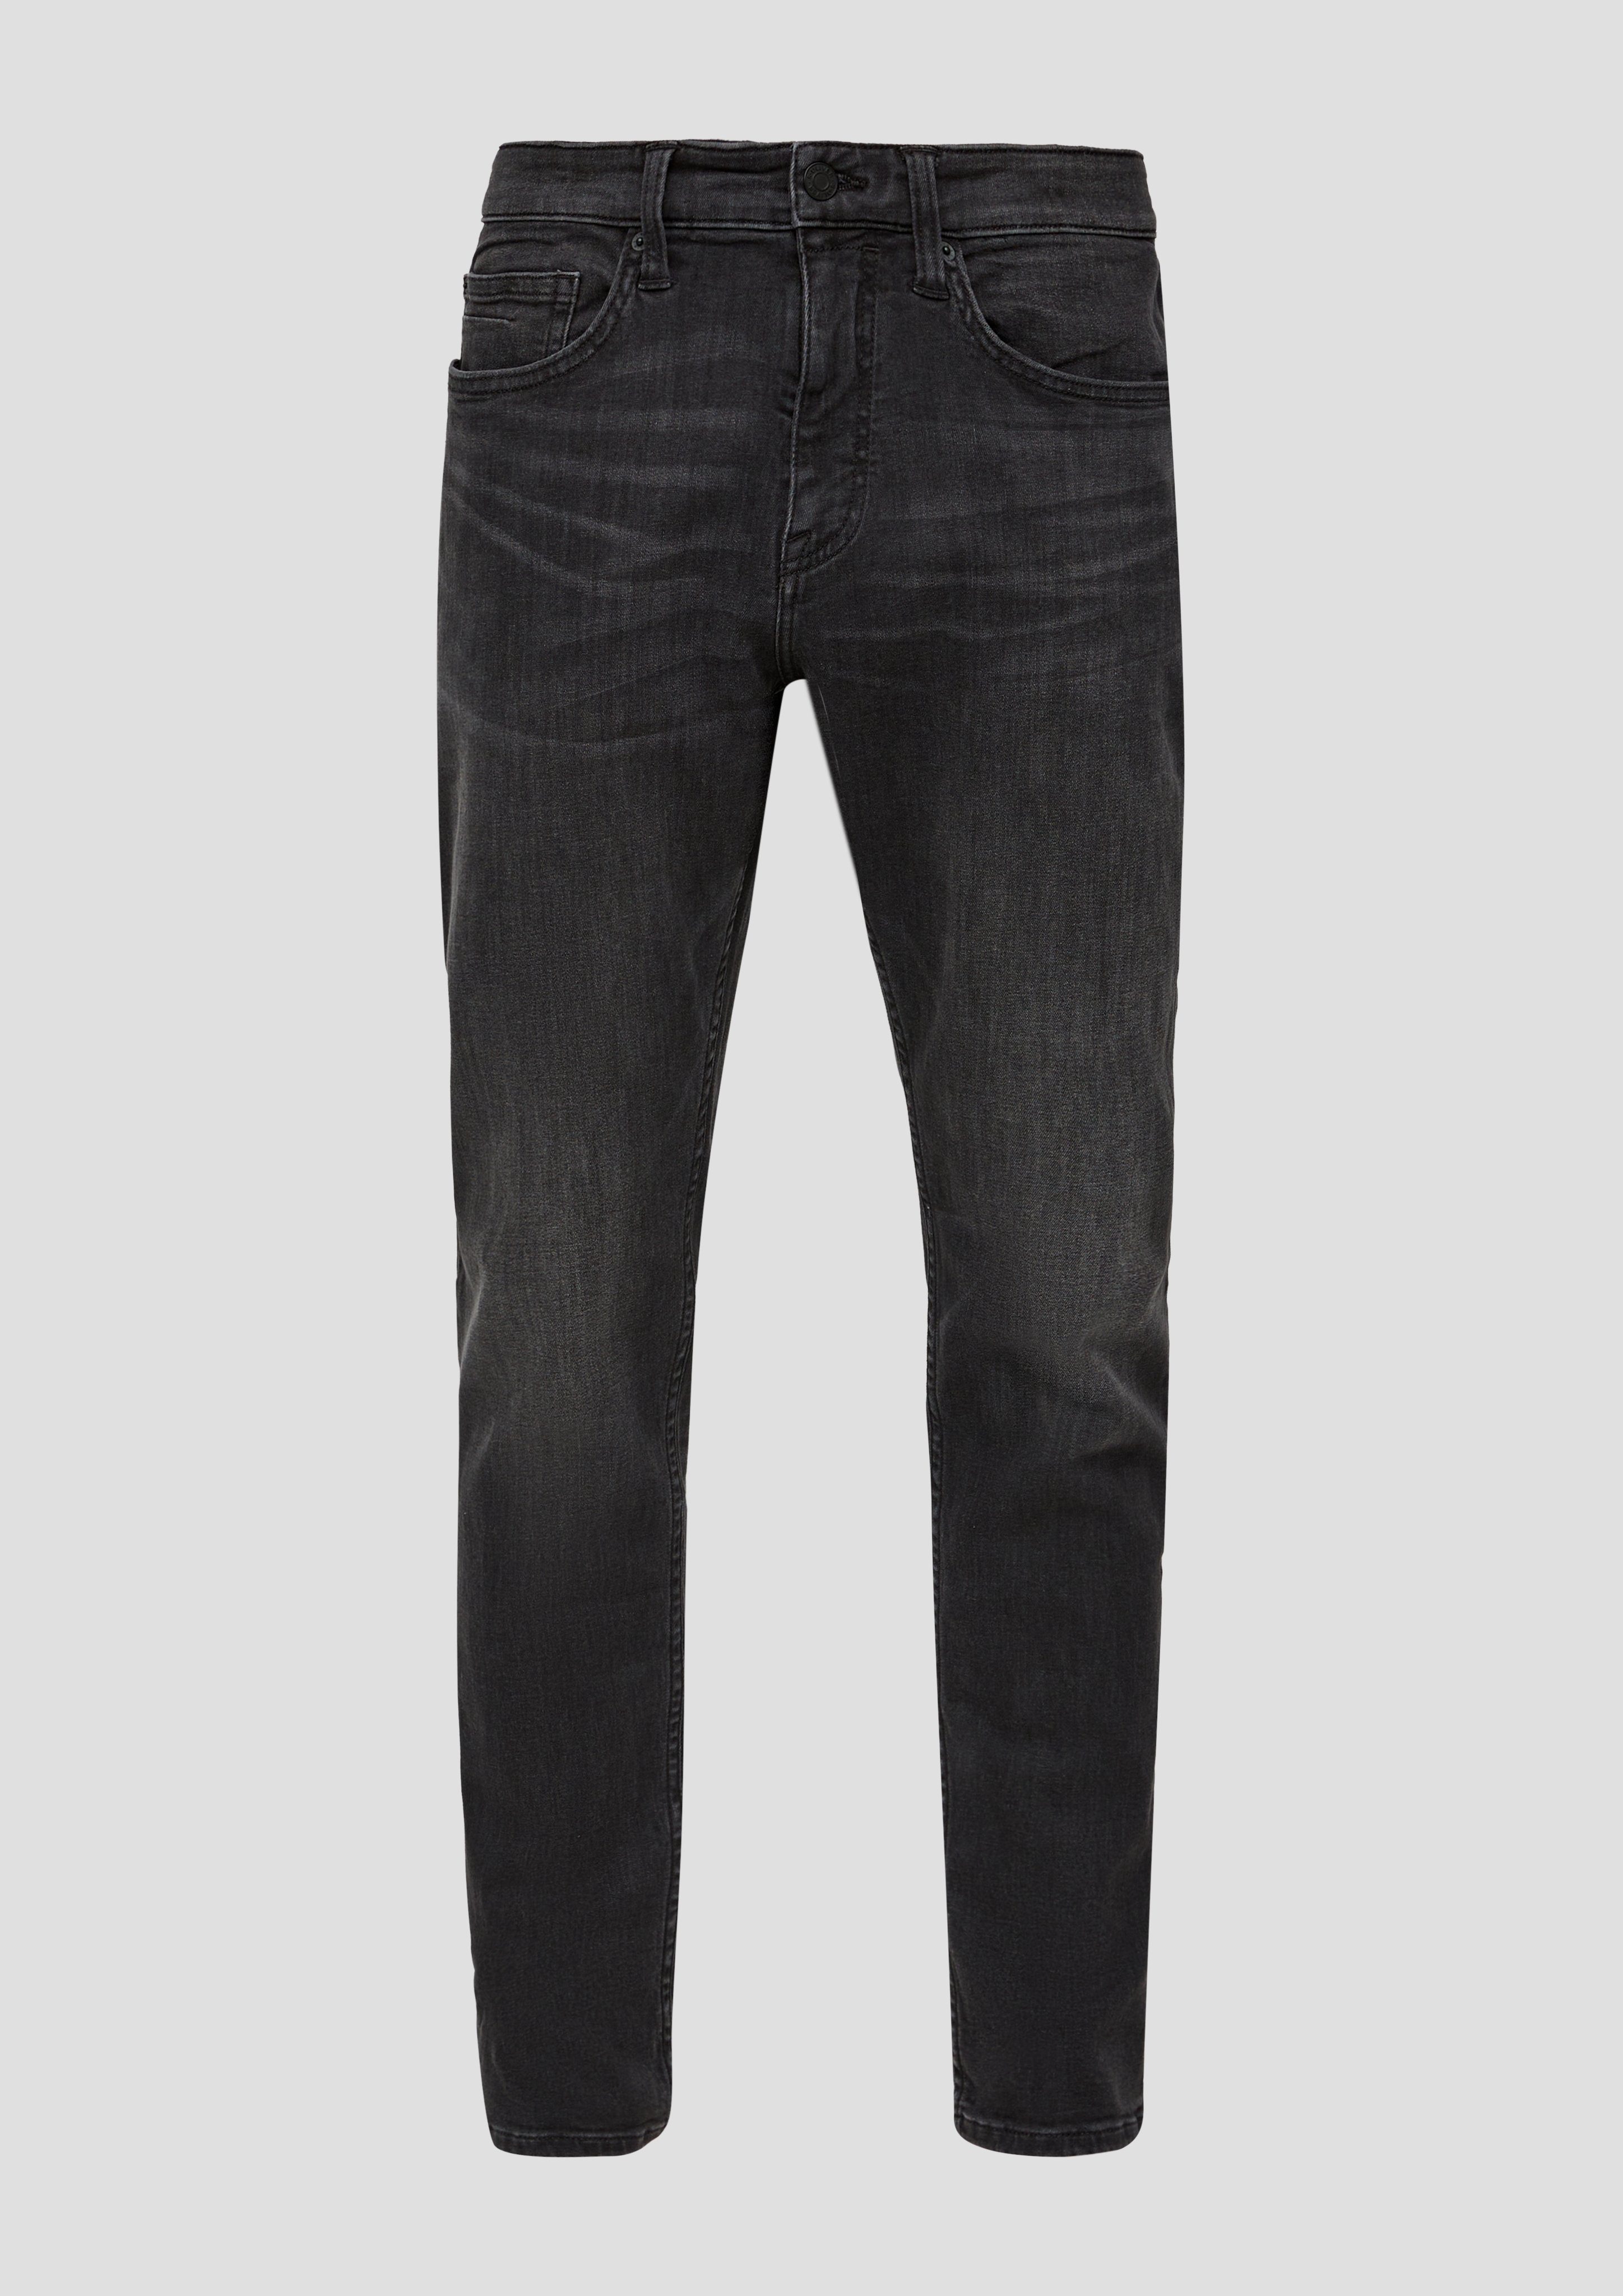 mit geradem Jeans Beinverlauf Bequeme grey/black32 s.Oliver